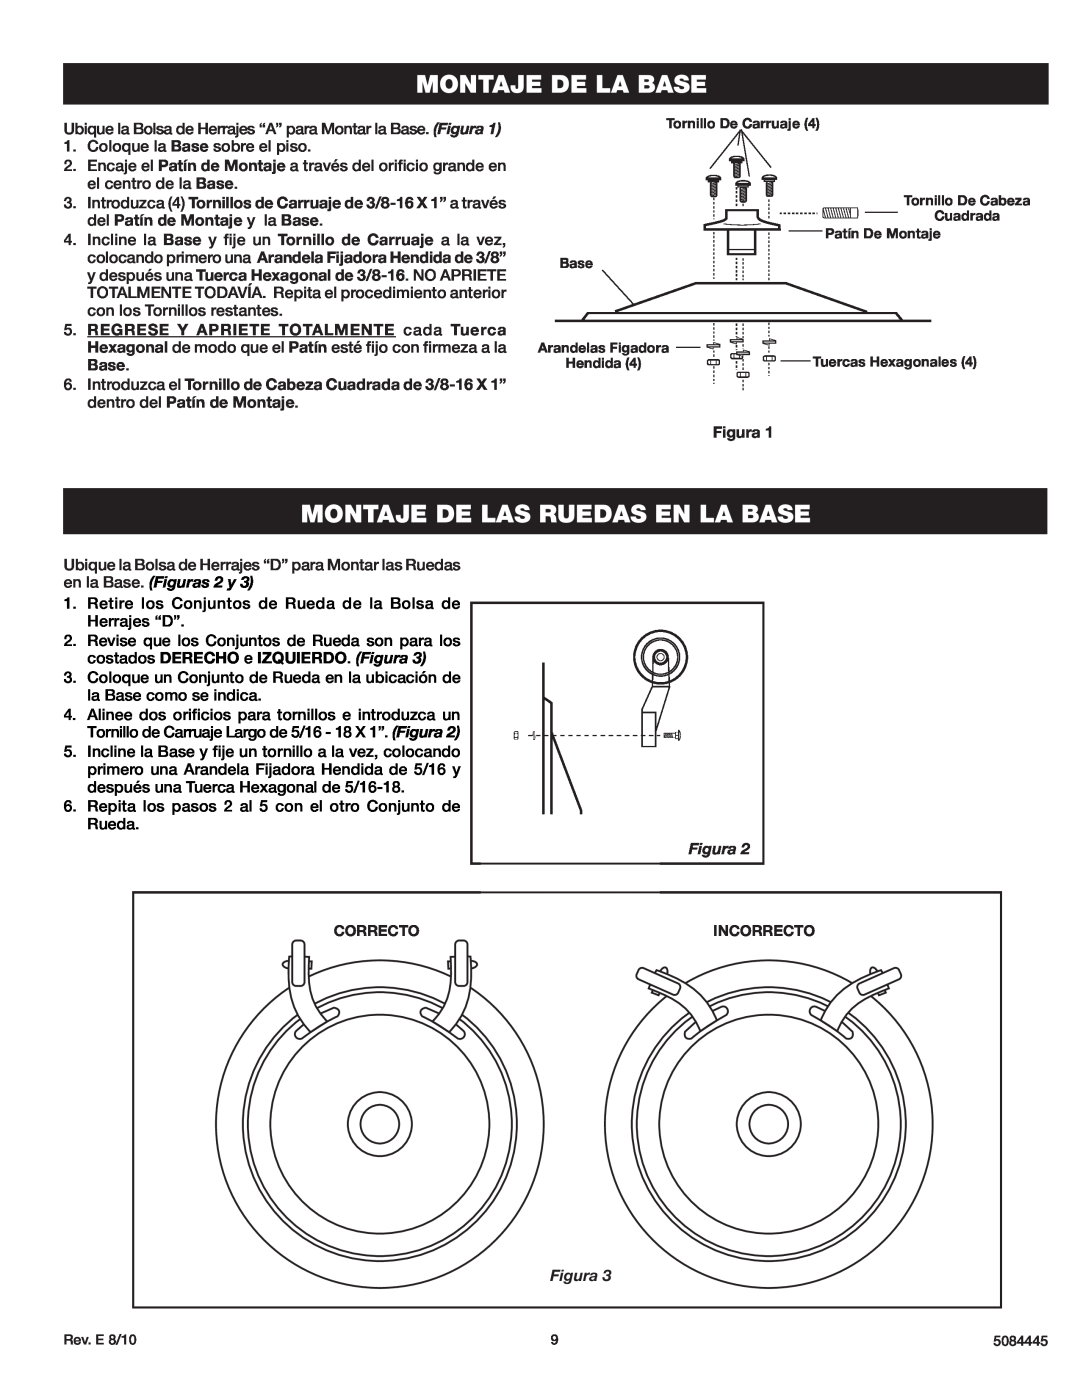 Lasko 3138 instruction sheet Montaje De La Base, Montaje De Las Ruedas En La Base, costados DERECHO e IZQUIERDO. Figura 